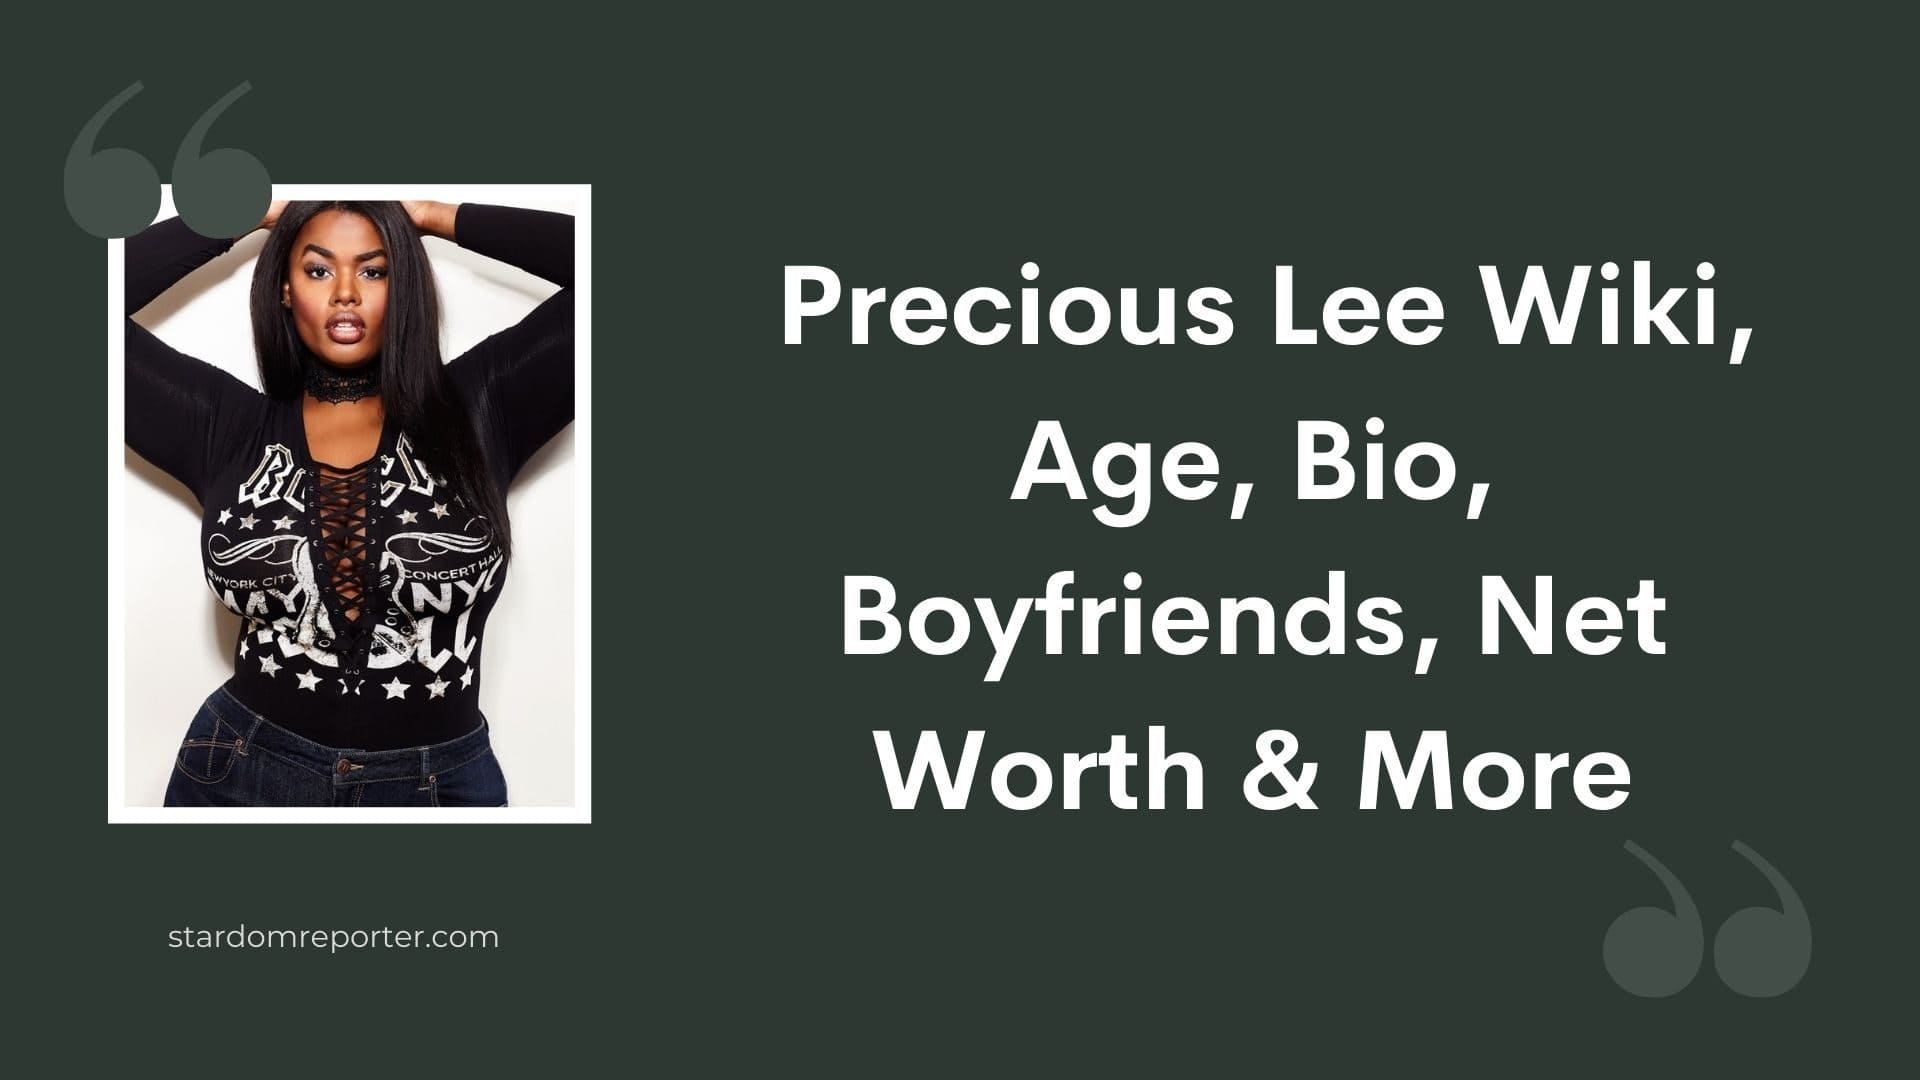 Precious Lee Wiki, Age, Bio, Boyfriends, Net Worth & More - 21